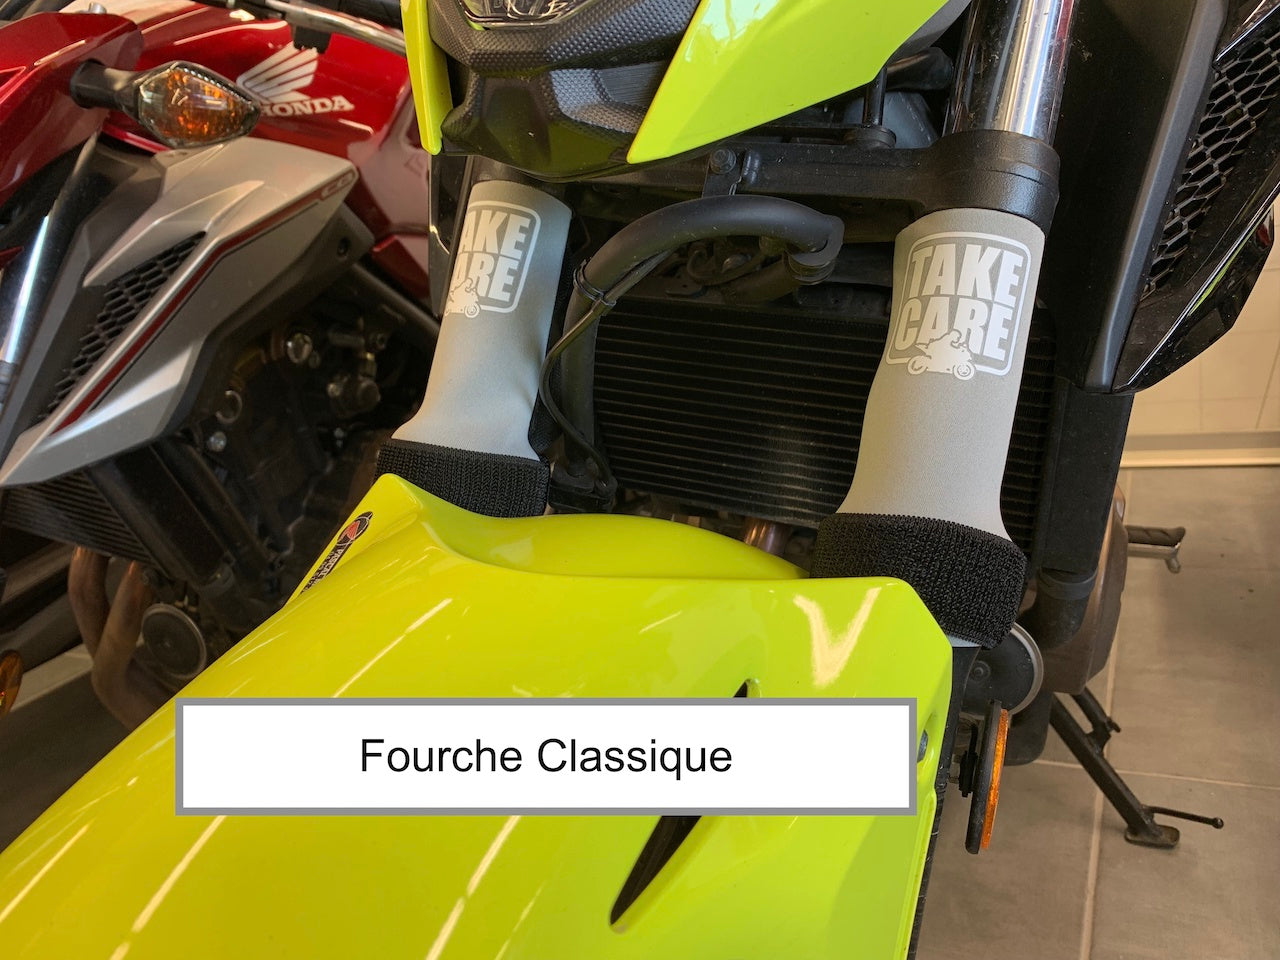 Protections pour Fourche "CLASSIQUE" de moto